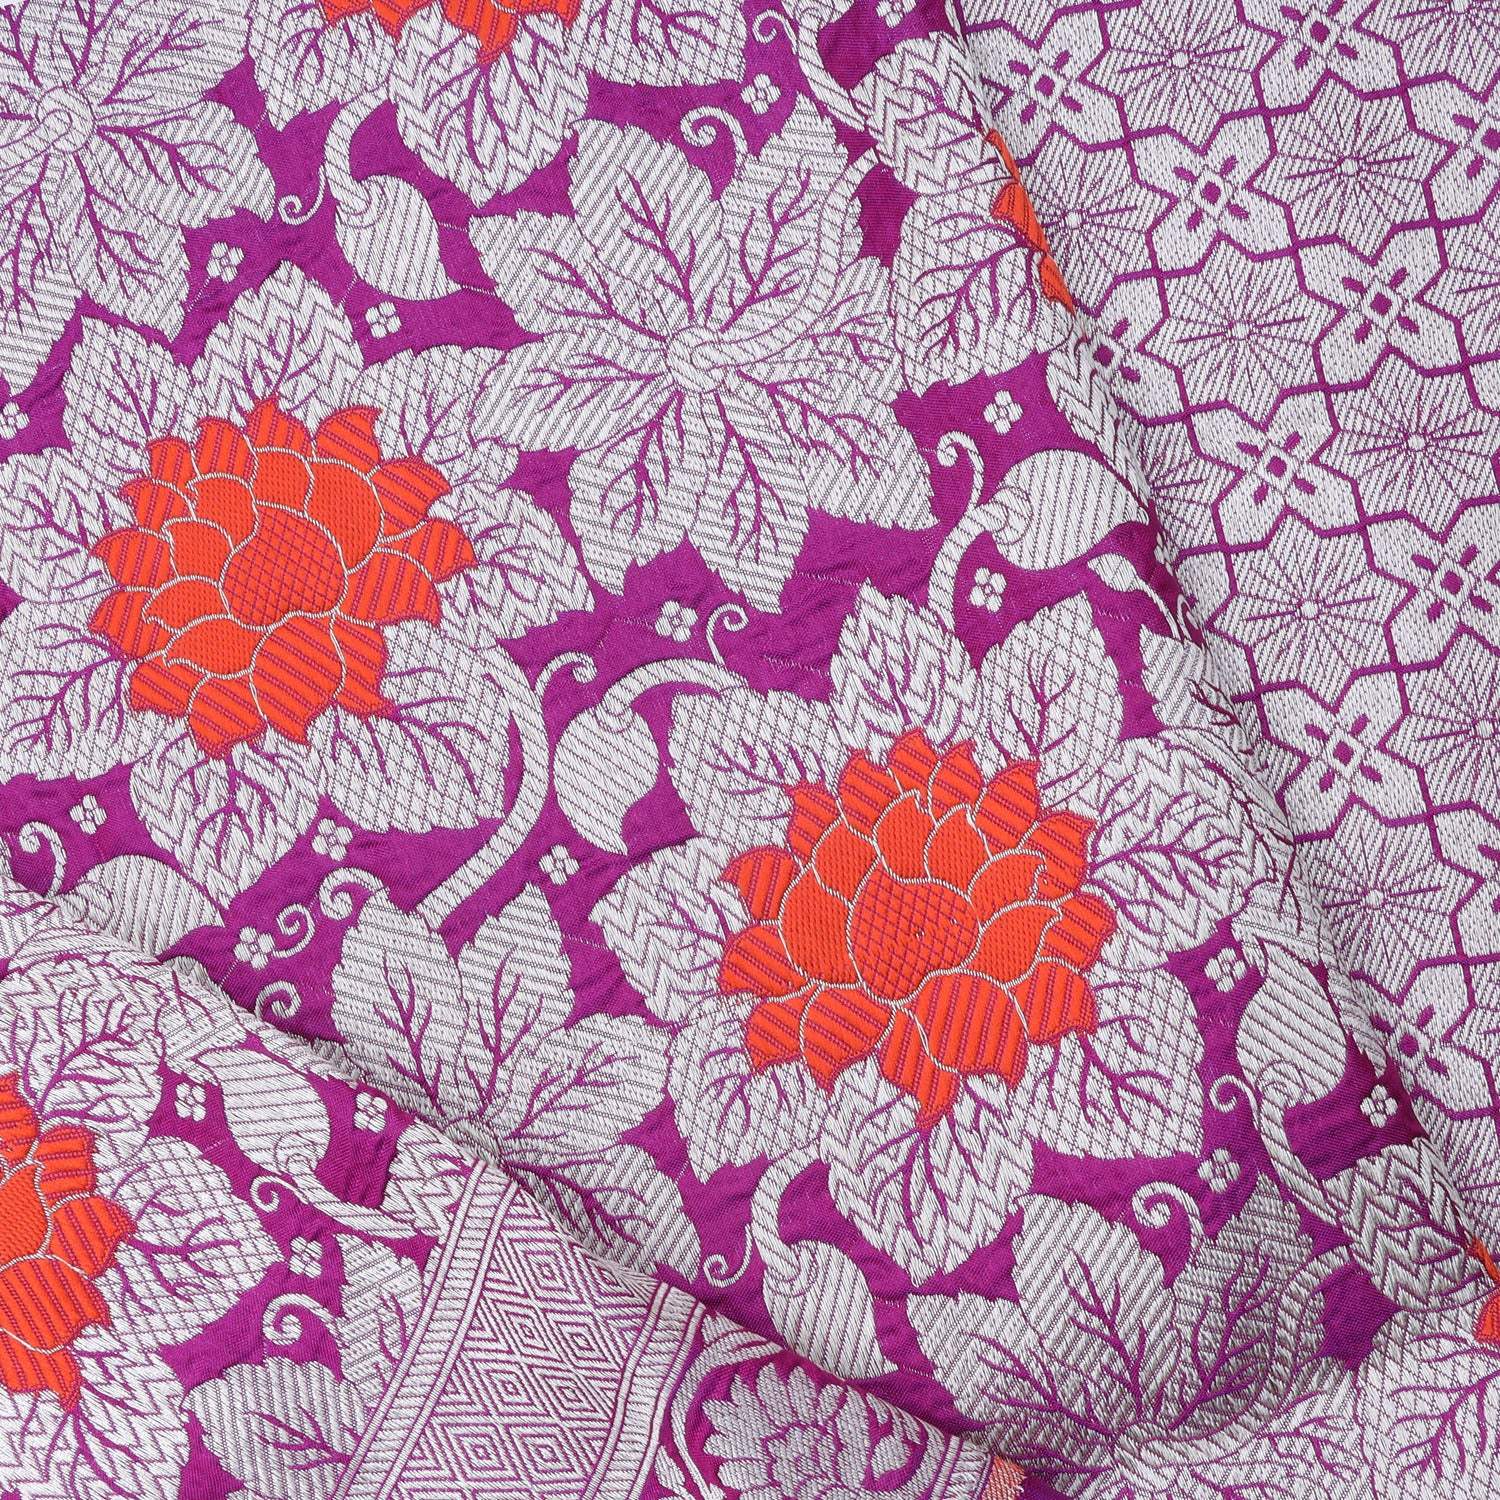 Deep Pink Banarasi Silk Handloom Saree With Floral Motif Pattern - Singhania's